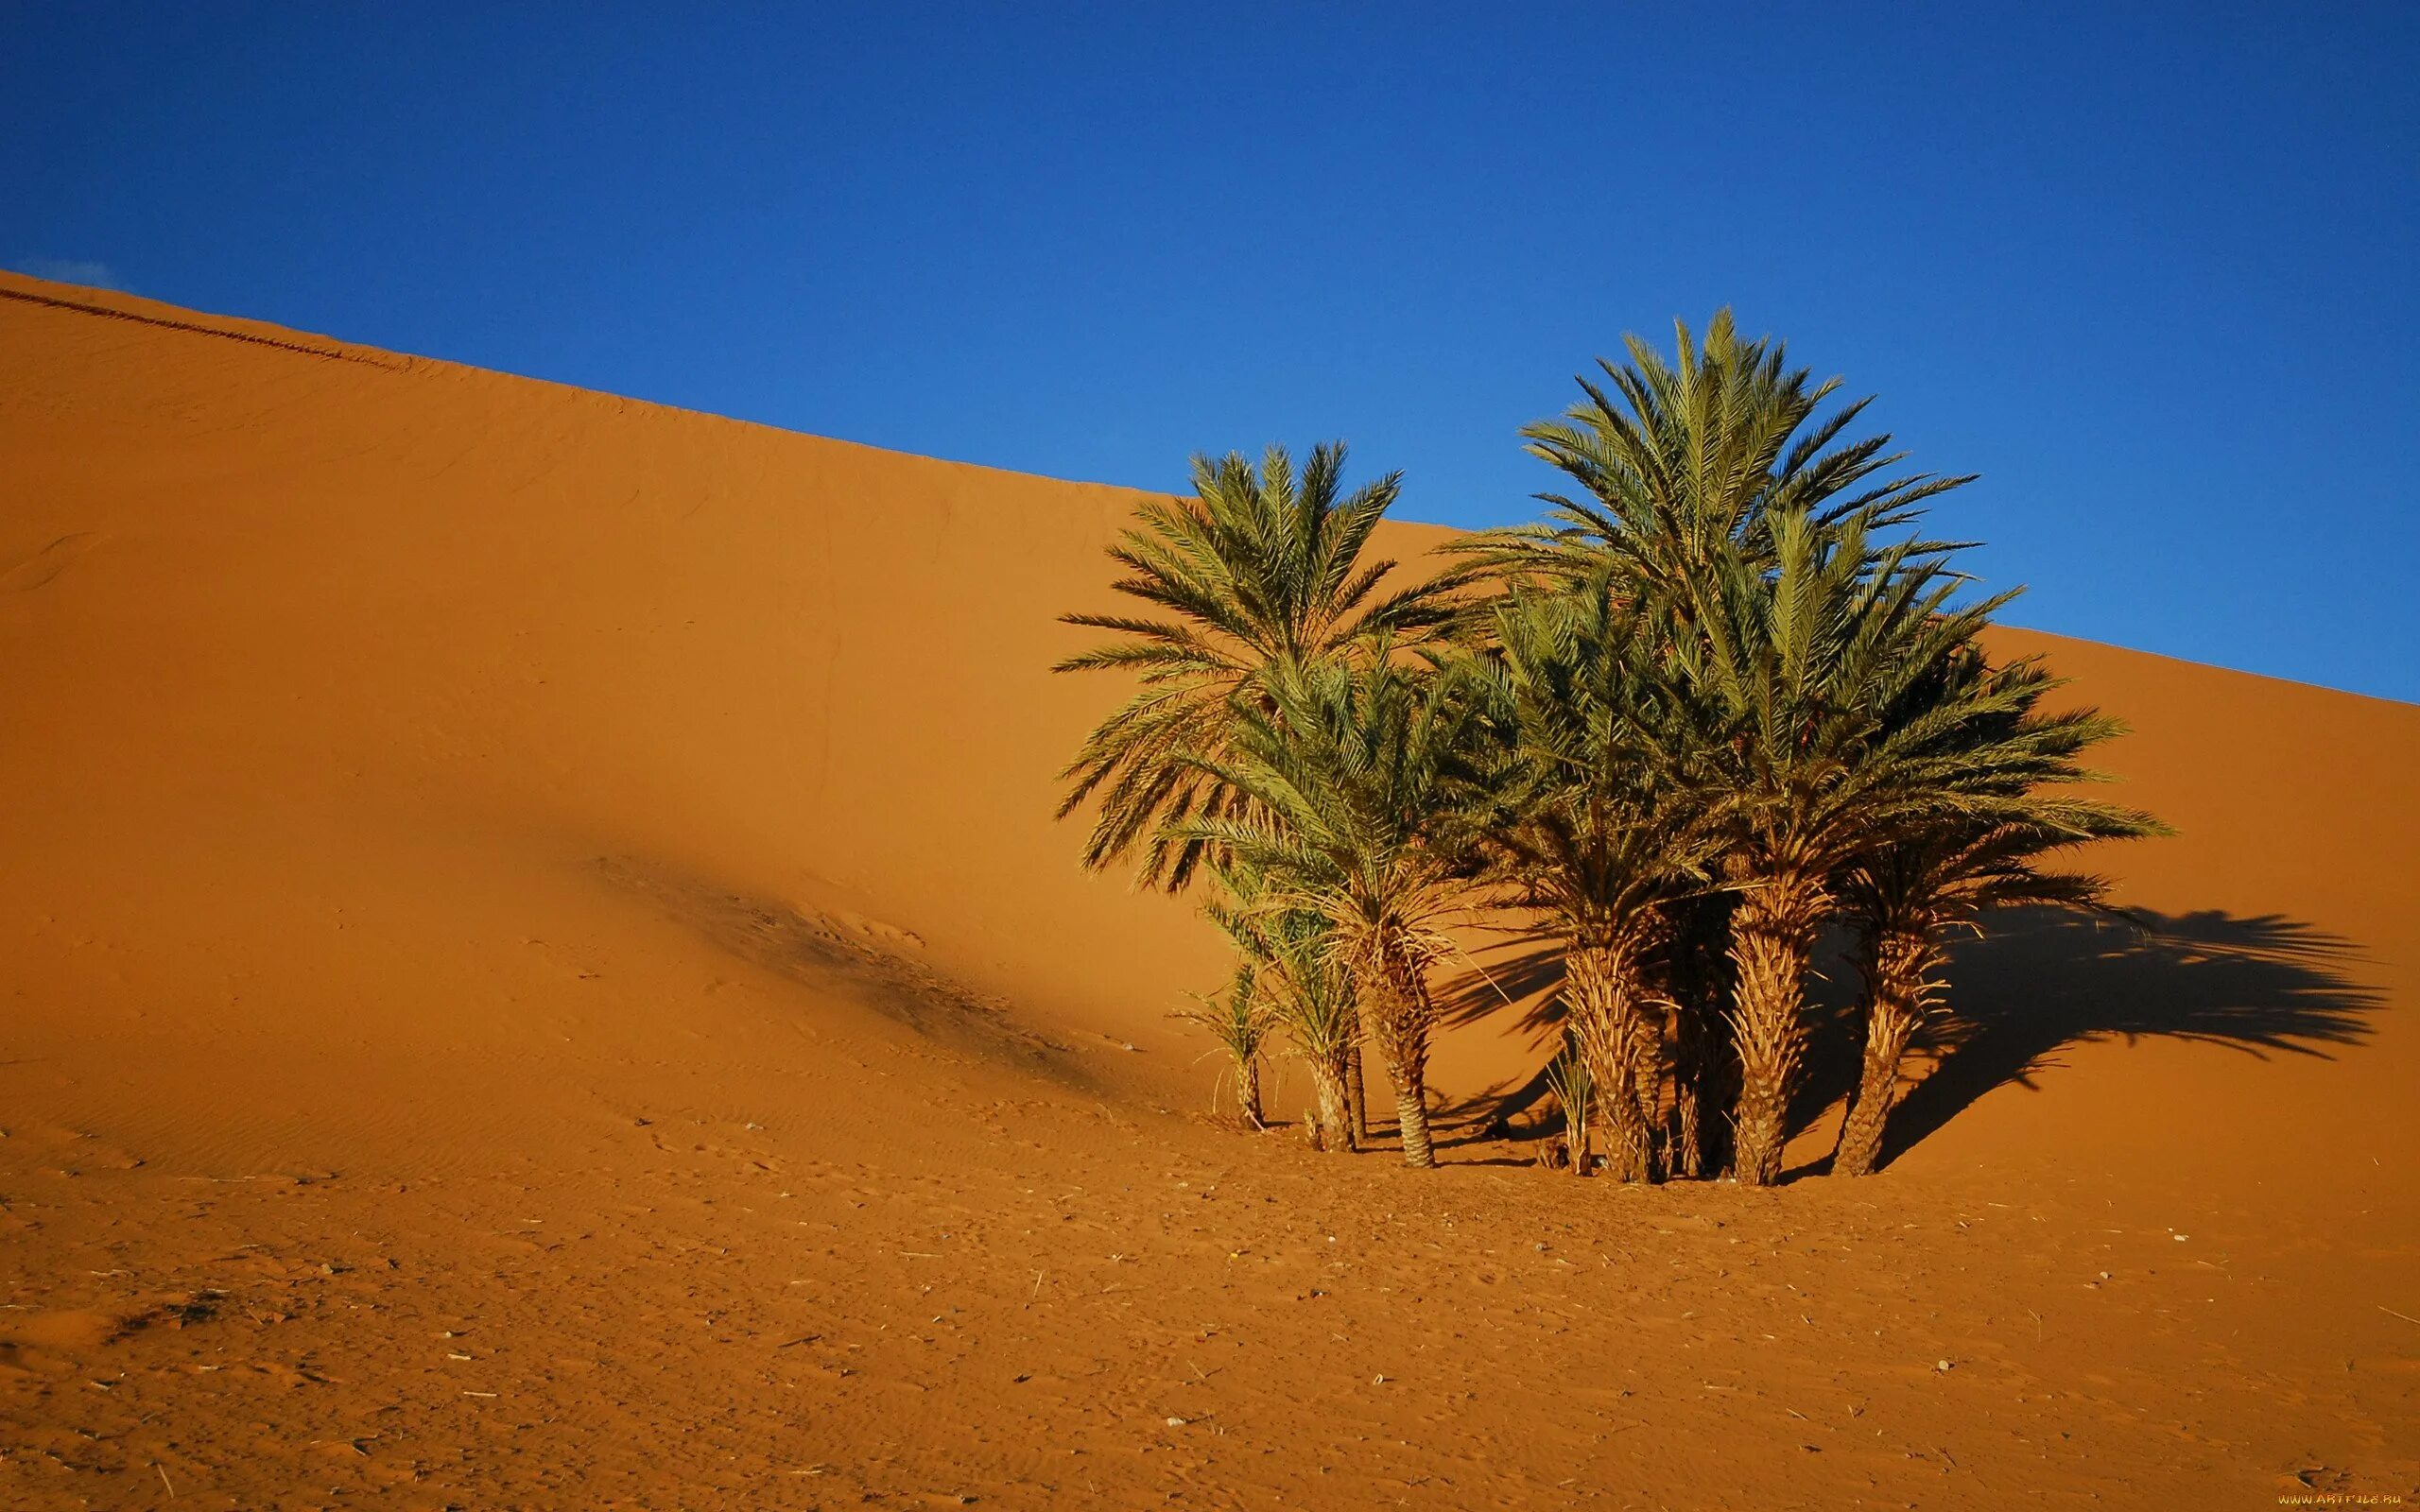 Финиковая Пальма пустыни. Финиковая Пальма в оазисе. Финиковая Пальма в пустыне Африки. Сахара оазисы с финиковыми пальмами.